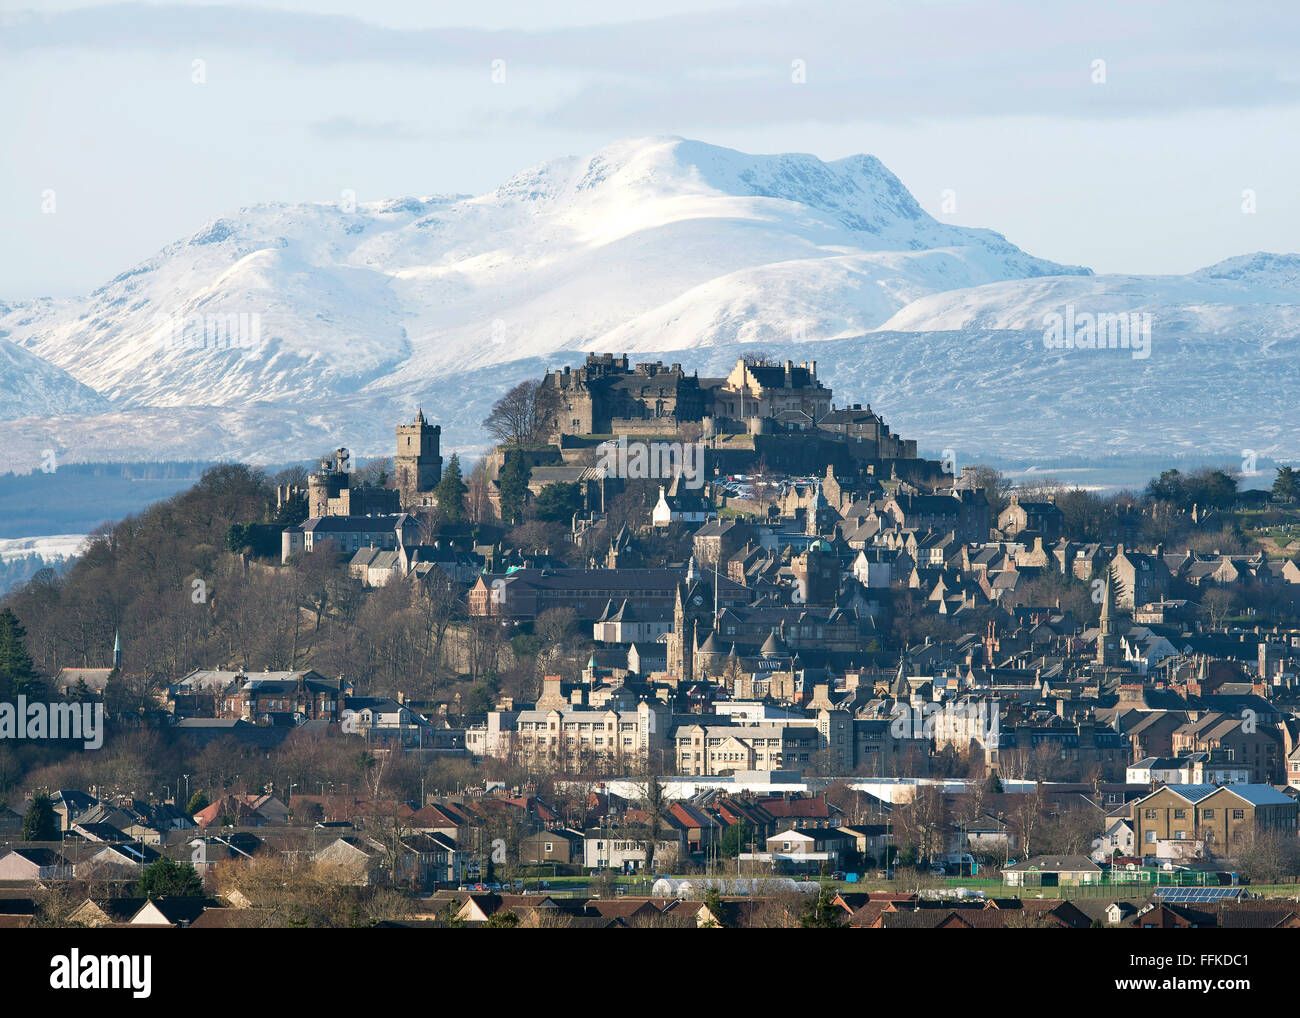 Il 15 febbraio 2016. Il Castello di Stirling e la città di Stirling, in Scozia con montagne coperte di neve (Stuc un Chroin ) in distanza. Foto Stock